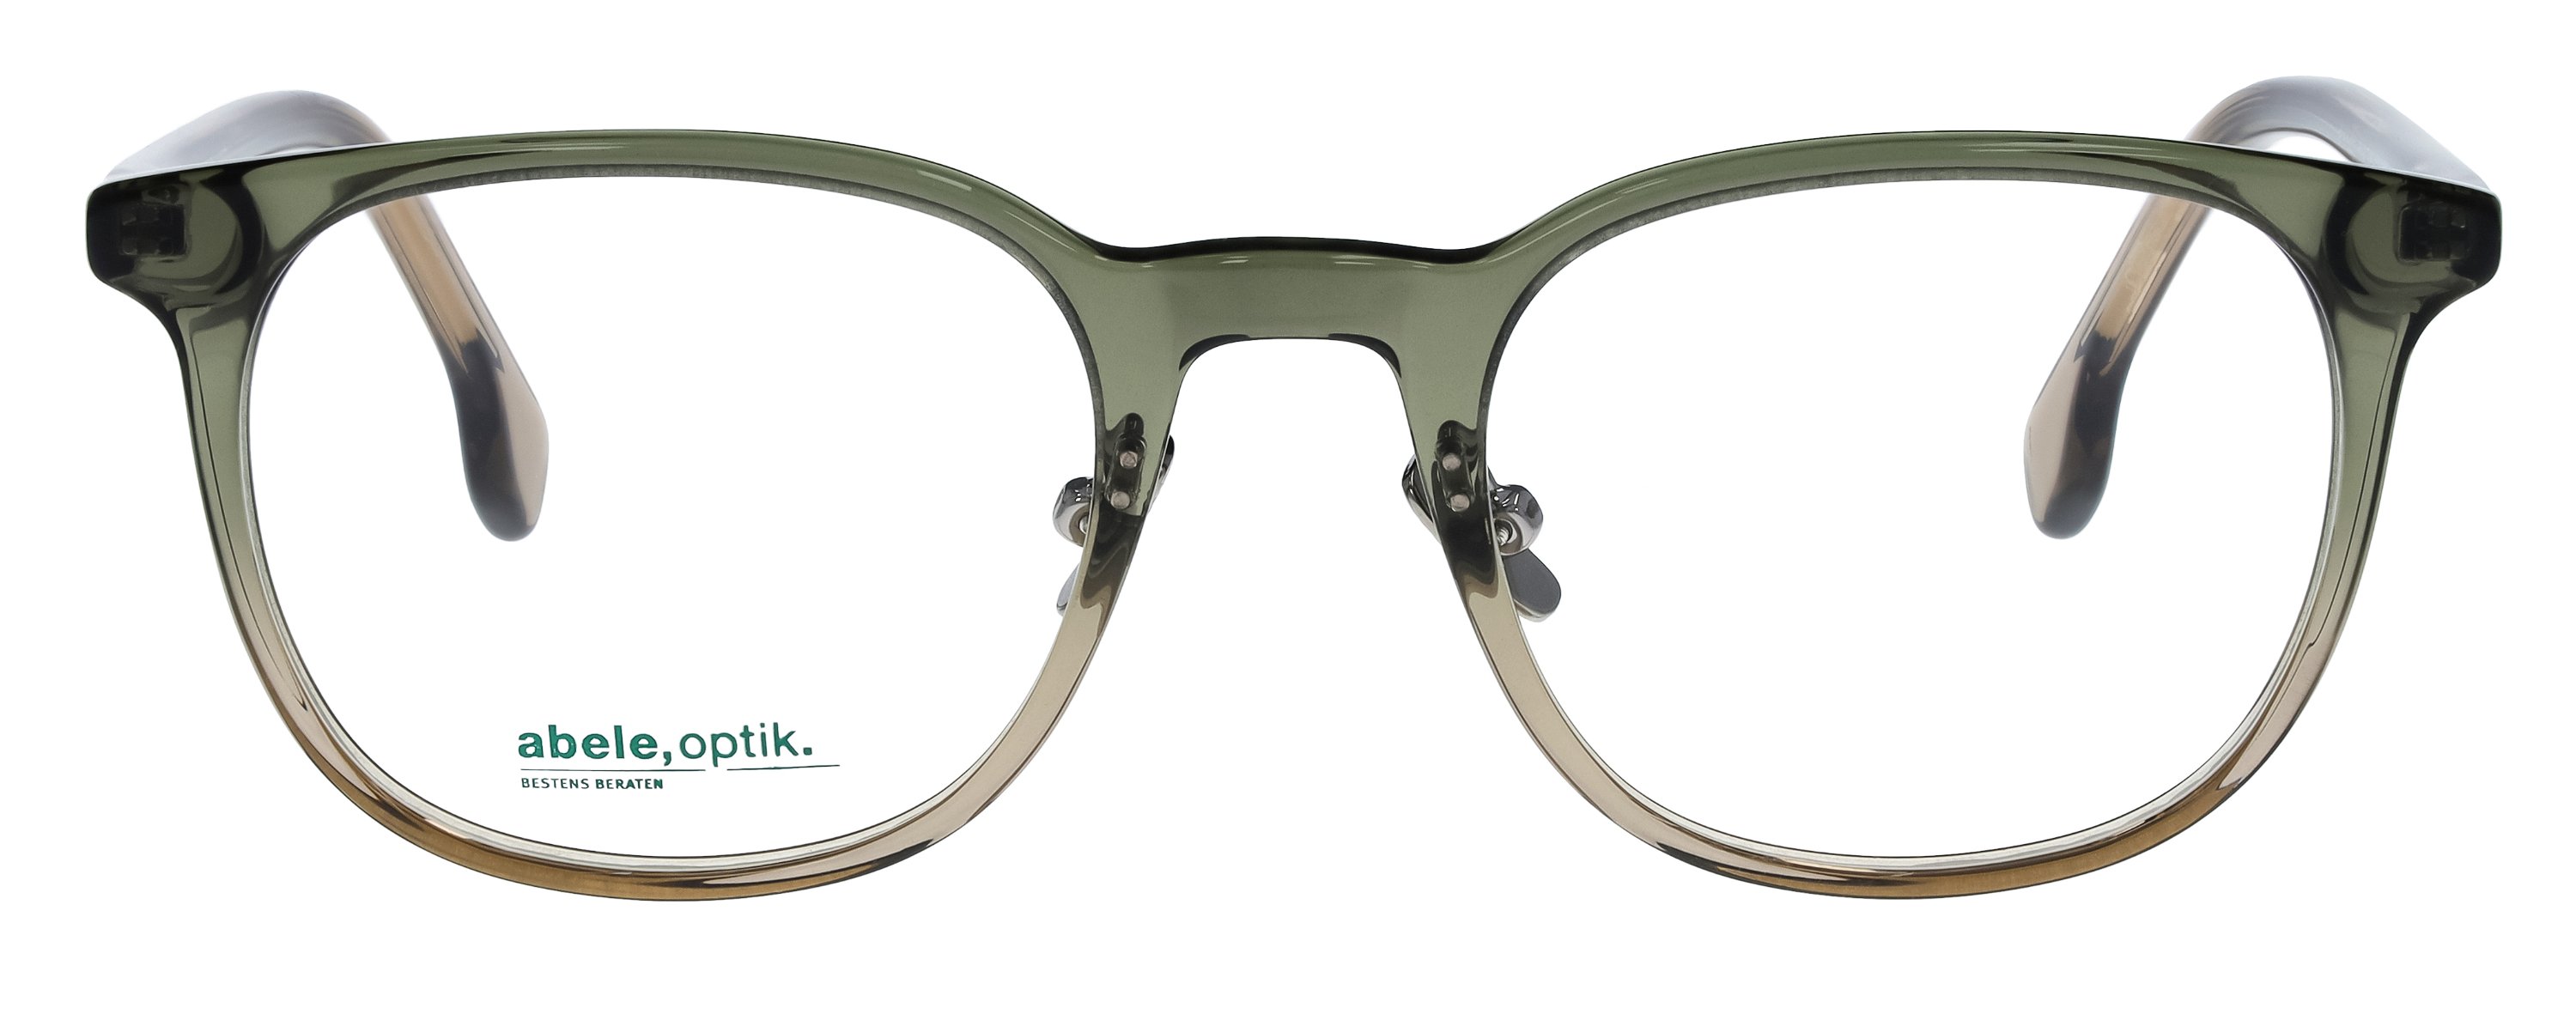 Das Bild zeigt die Korrektionsbrille 148091 von der Marke Abele Optik in dunkelgrün-grau.